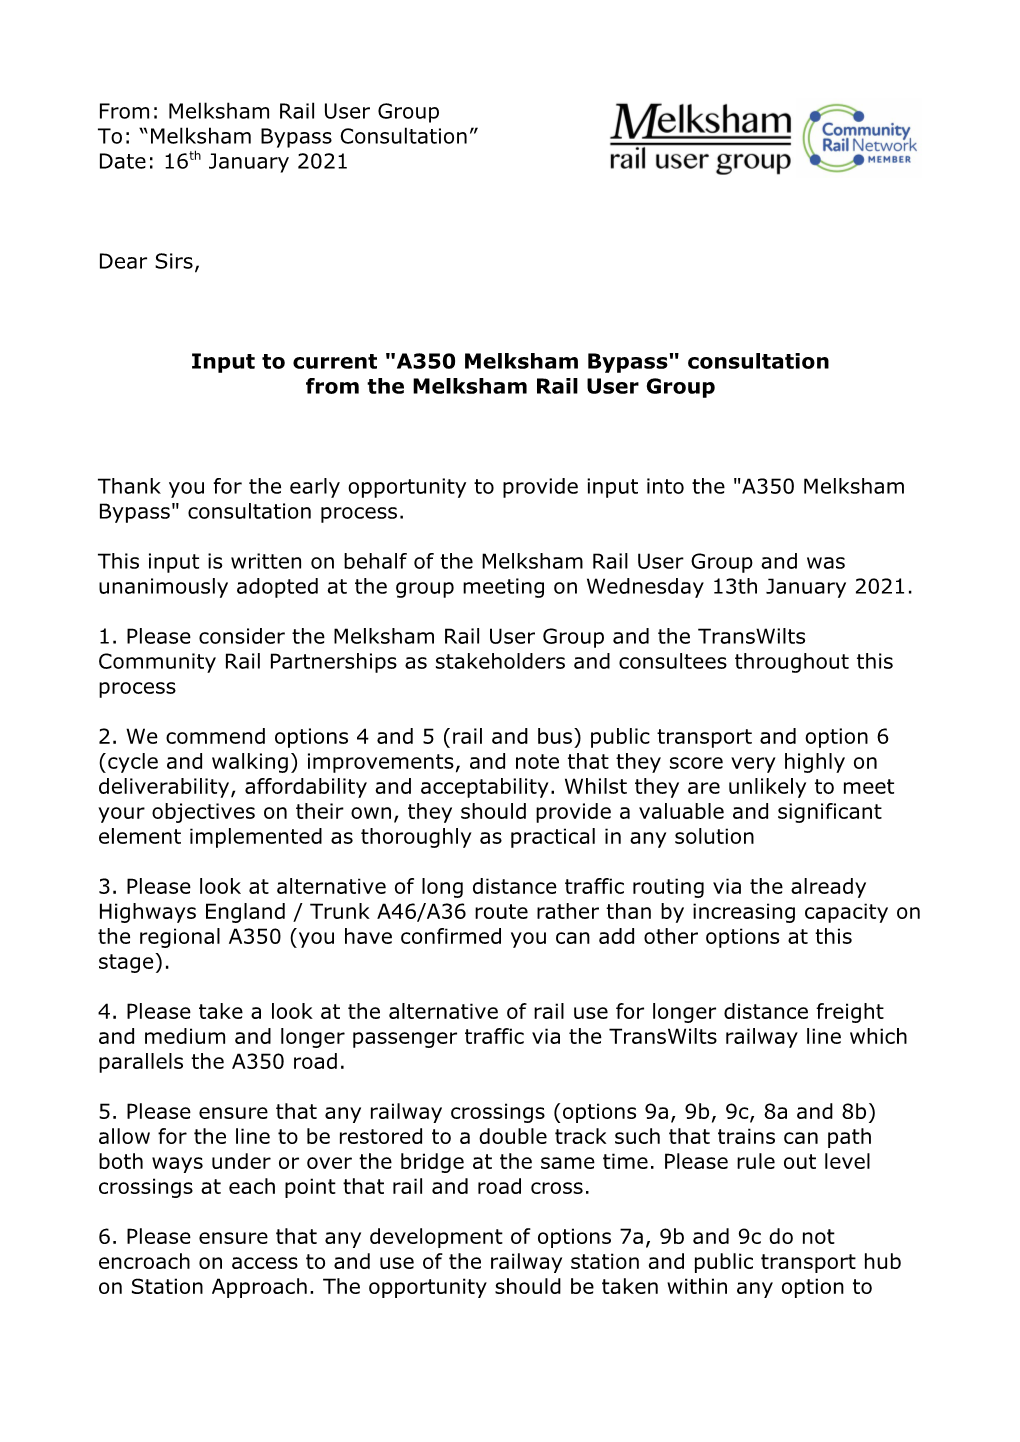 From: Melksham Rail User Group To: “Melksham Bypass Consultation” Date: 16Th January 2021